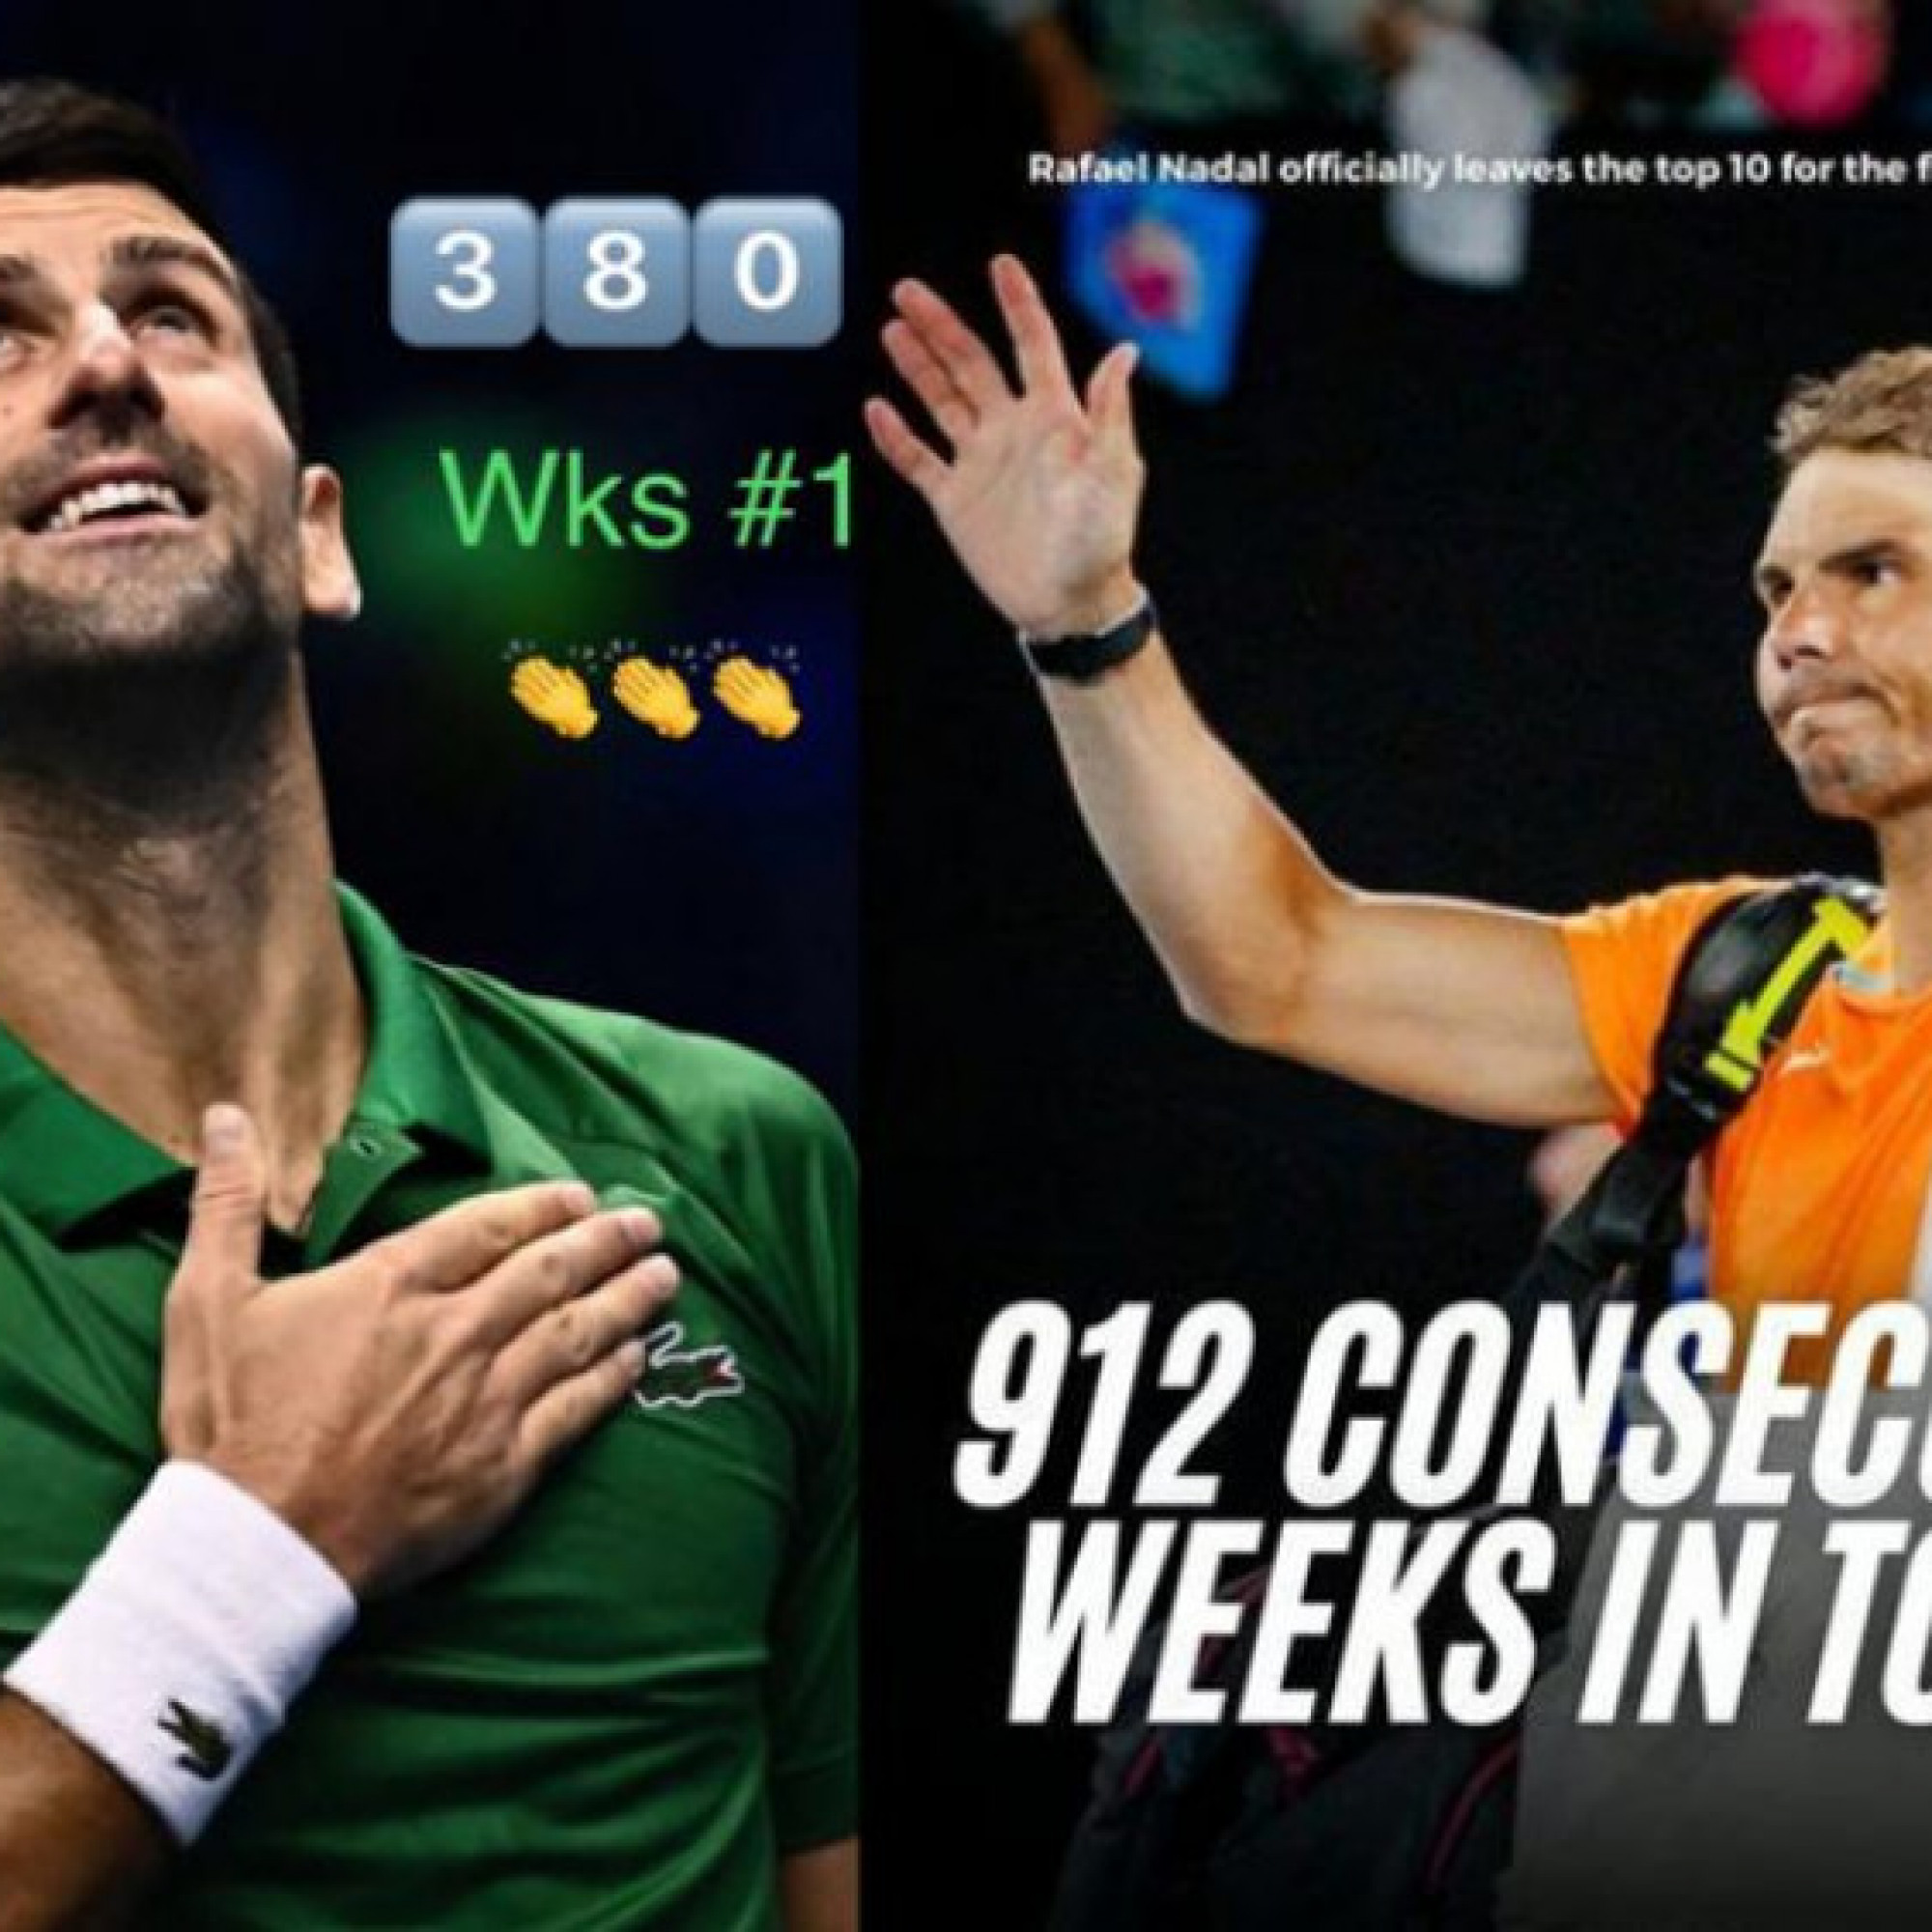  - Fan khen Nadal 912 tuần top 10 "ấn tượng" hơn Djokovic 380 tuần ở ngôi số 1